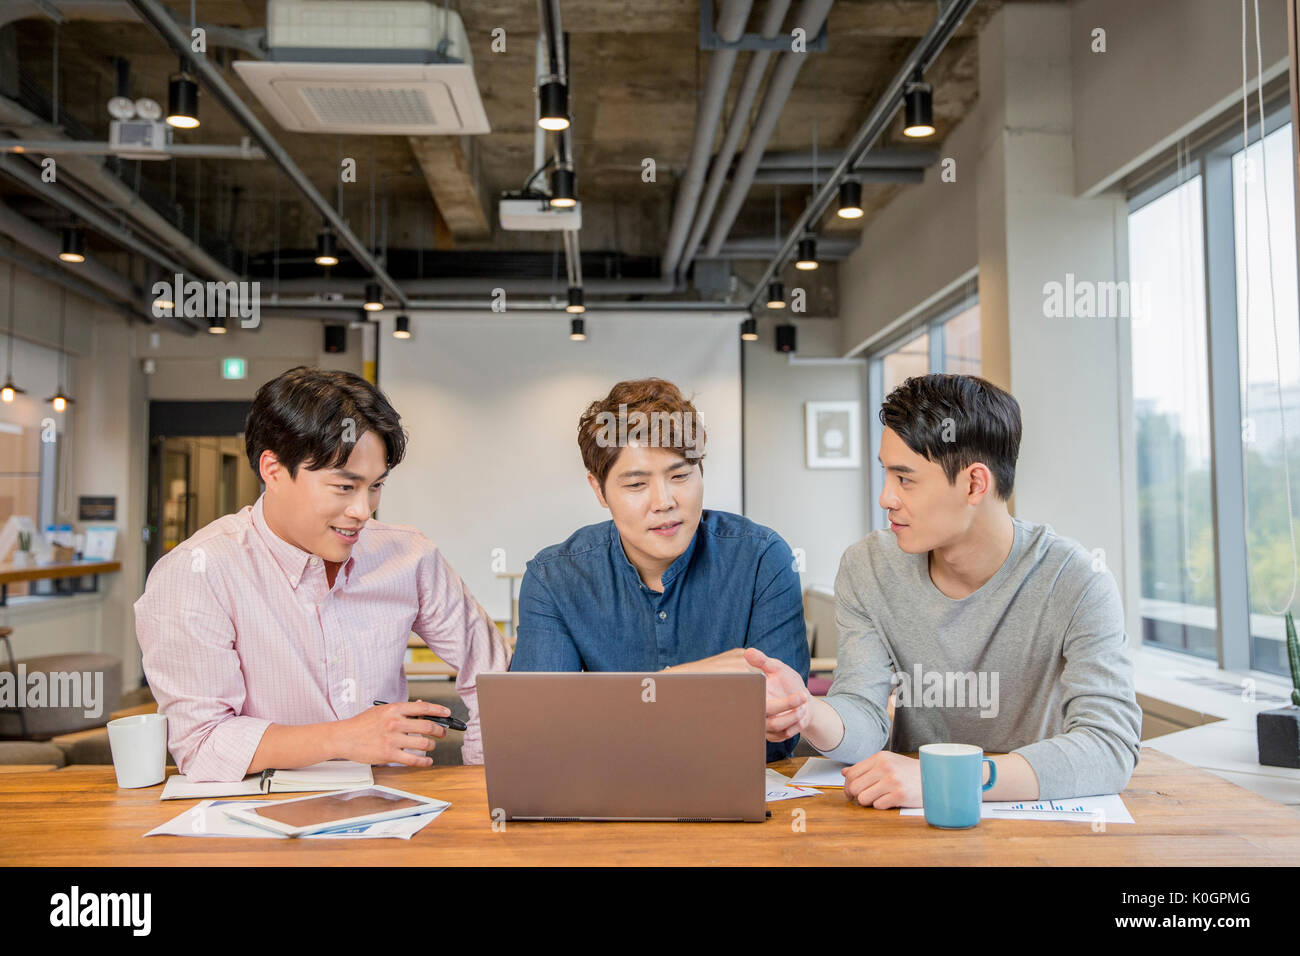 Retrato de tres empresarios sonrientes tener un encuentro compartiendo un ordenador portátil en la cafetería Foto de stock